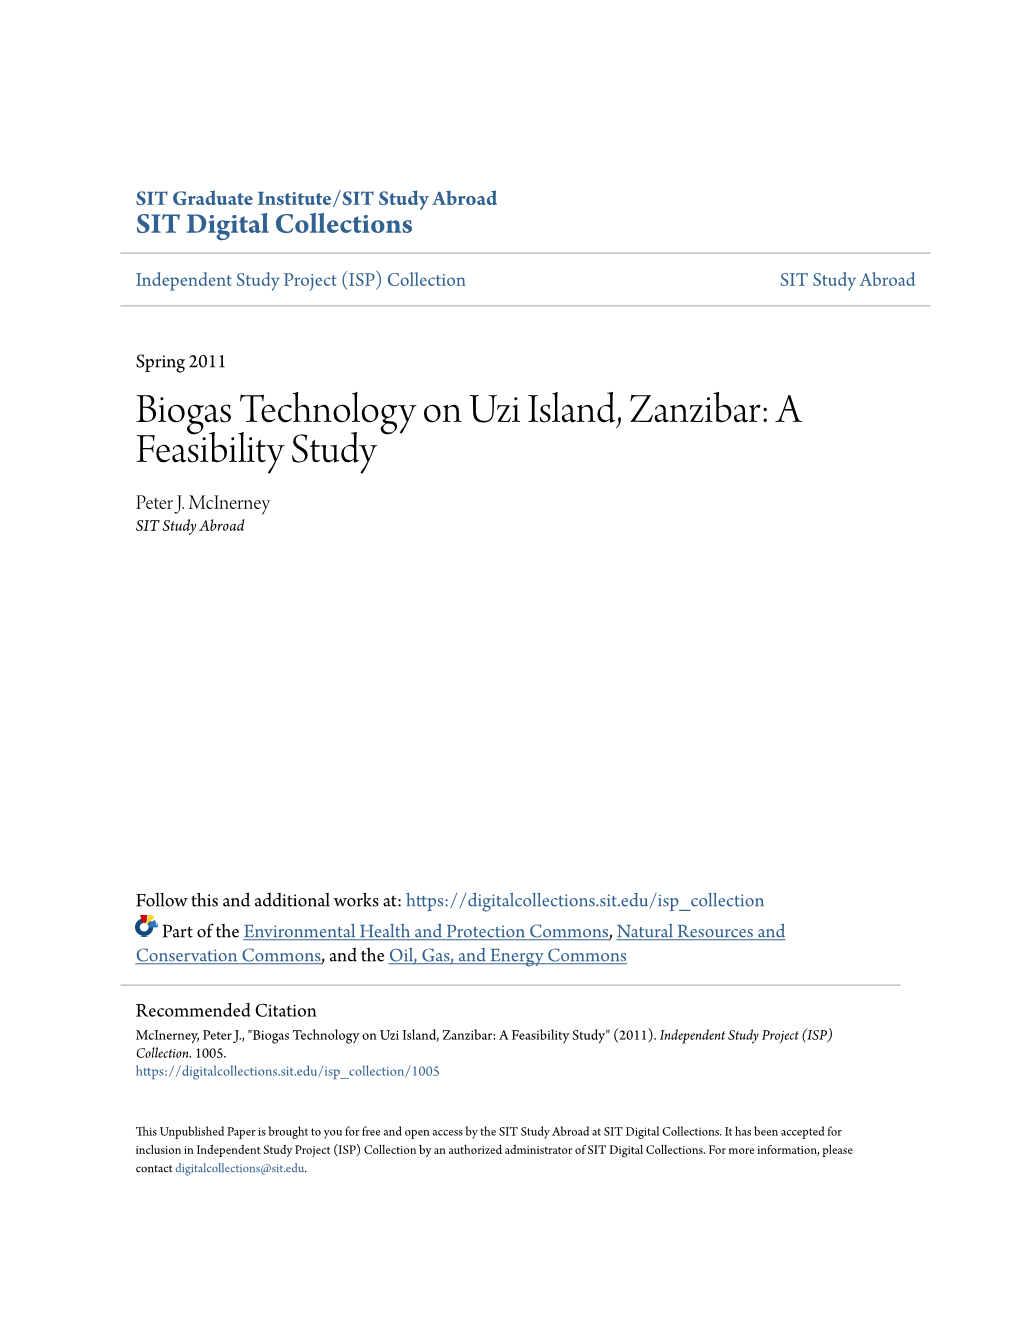 Biogas Technology on Uzi Island, Zanzibar: a Feasibility Study Peter J